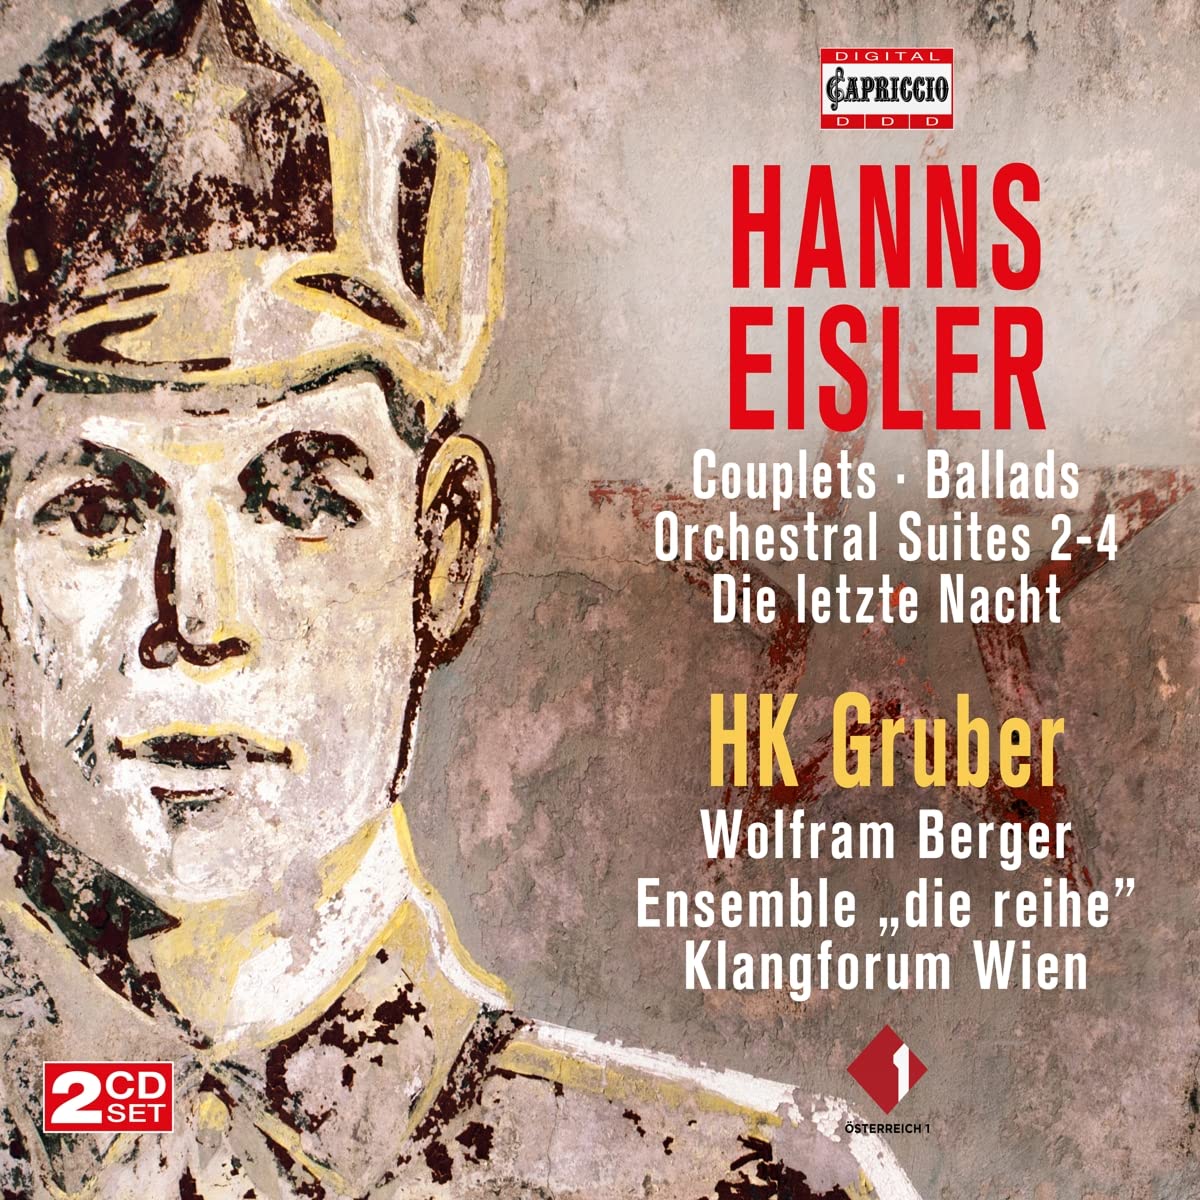 Audio Cd Hans Eisler - Werke Von Hans Eisler (2 Cd) NUOVO SIGILLATO, EDIZIONE DEL 26/11/2021 SUBITO DISPONIBILE